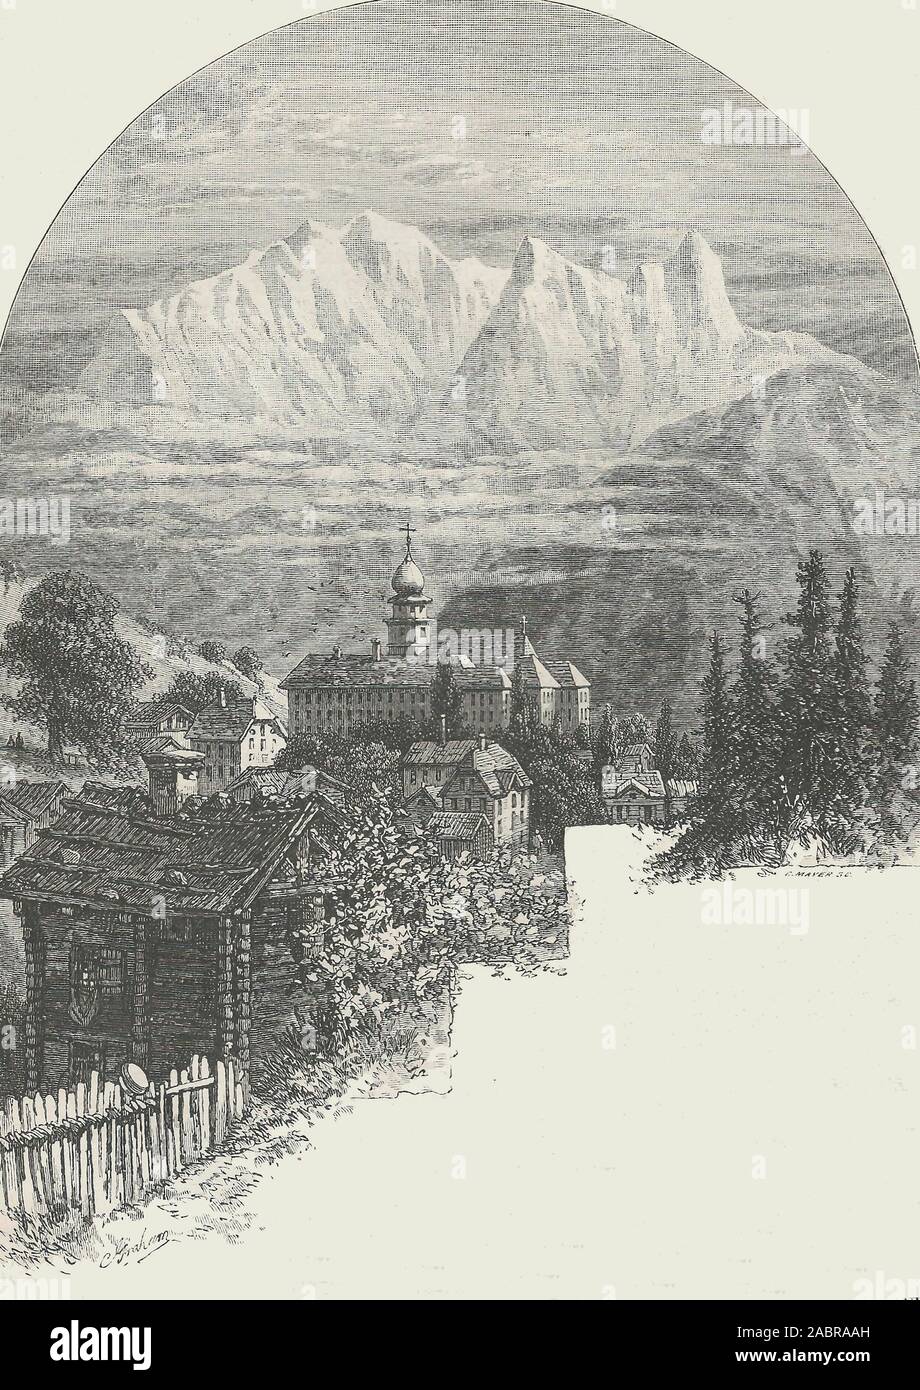 Villaggio di Pfaffers, vicino alle terme di Ragatz, circa 1880 Foto Stock